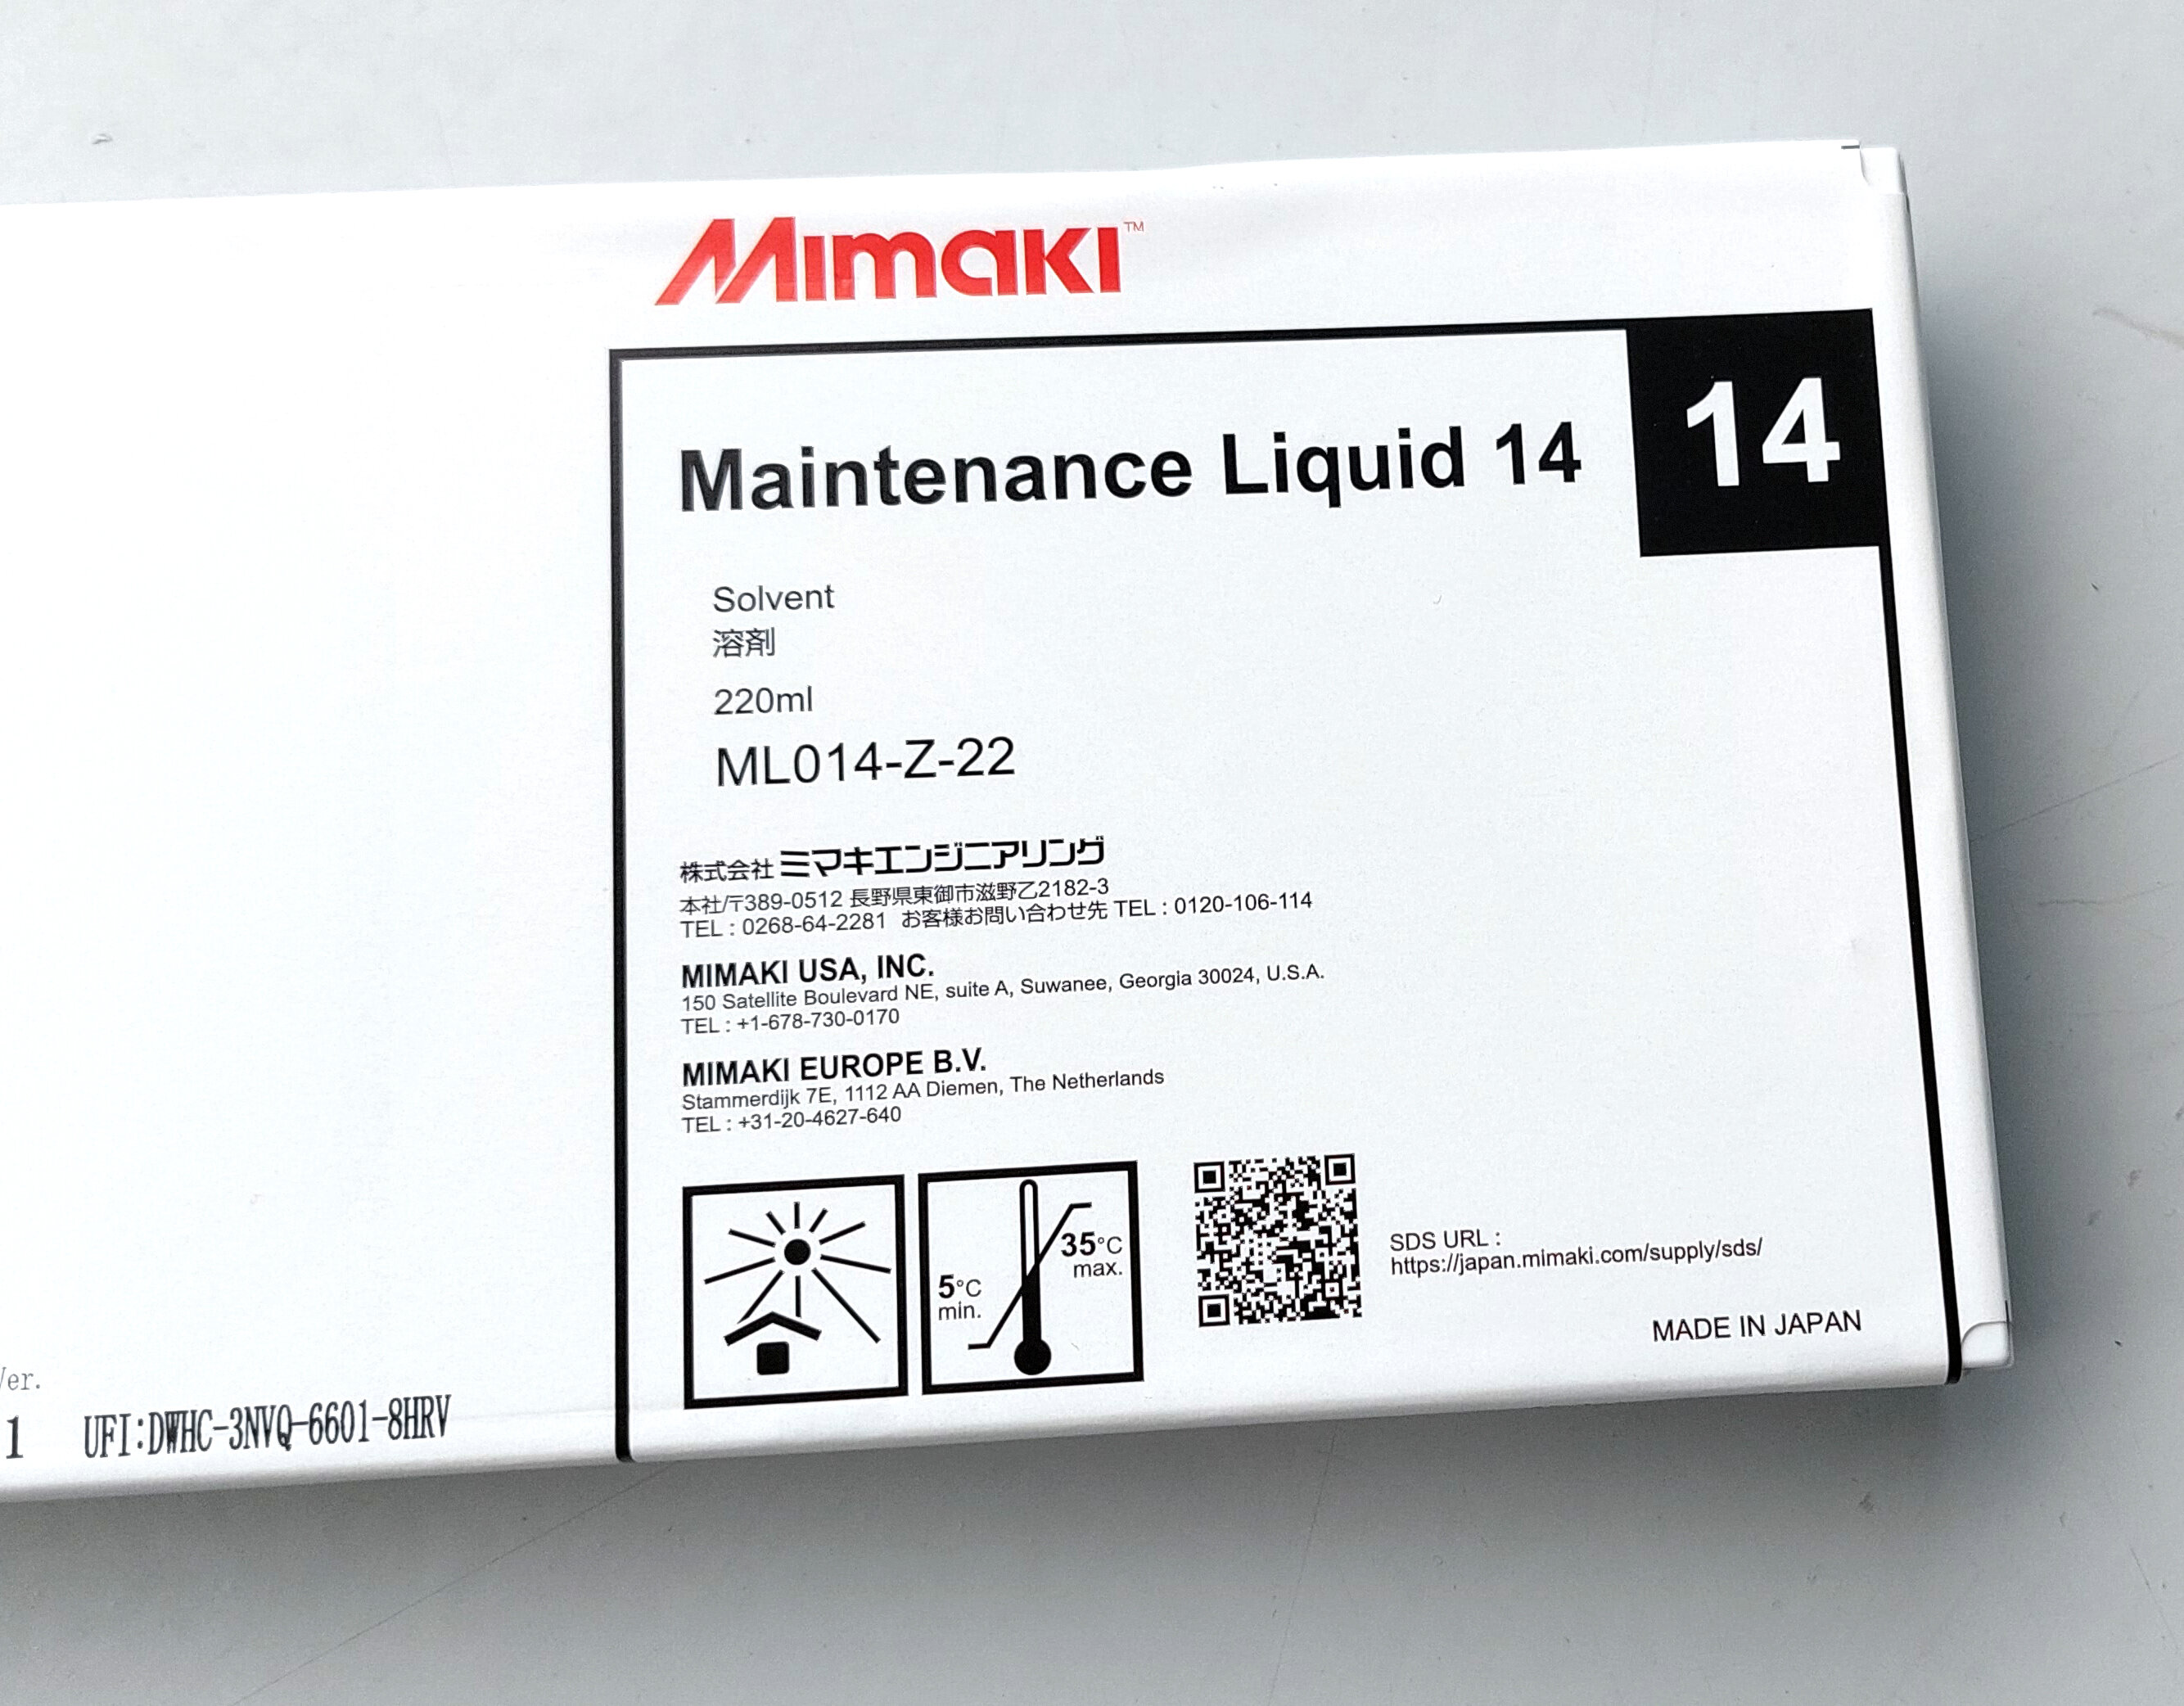 Cleaning voor Mimaki printers met solvent inkt (maintenance liquid 14)